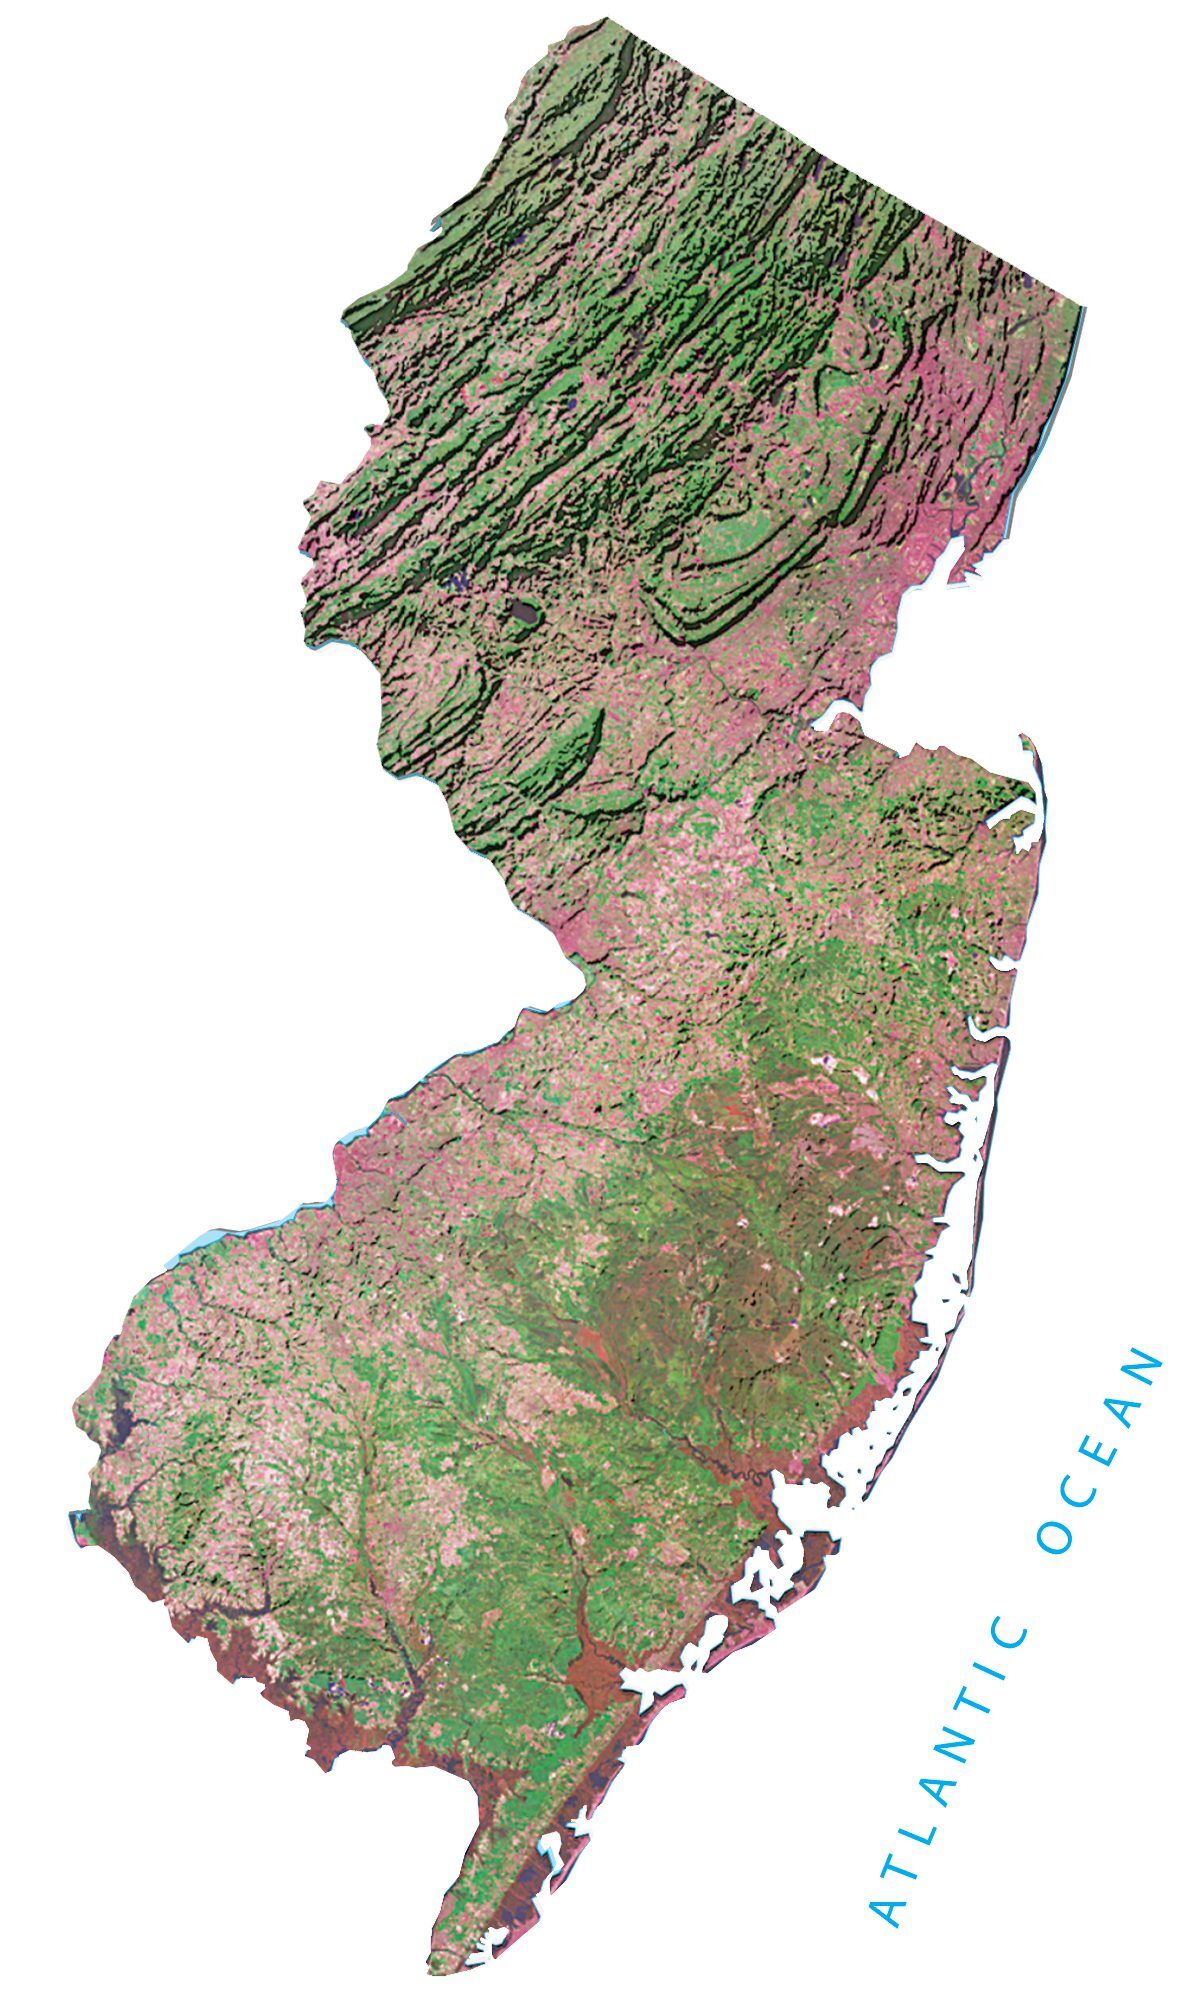 Jersey City, Hudson River, NJ, & Map